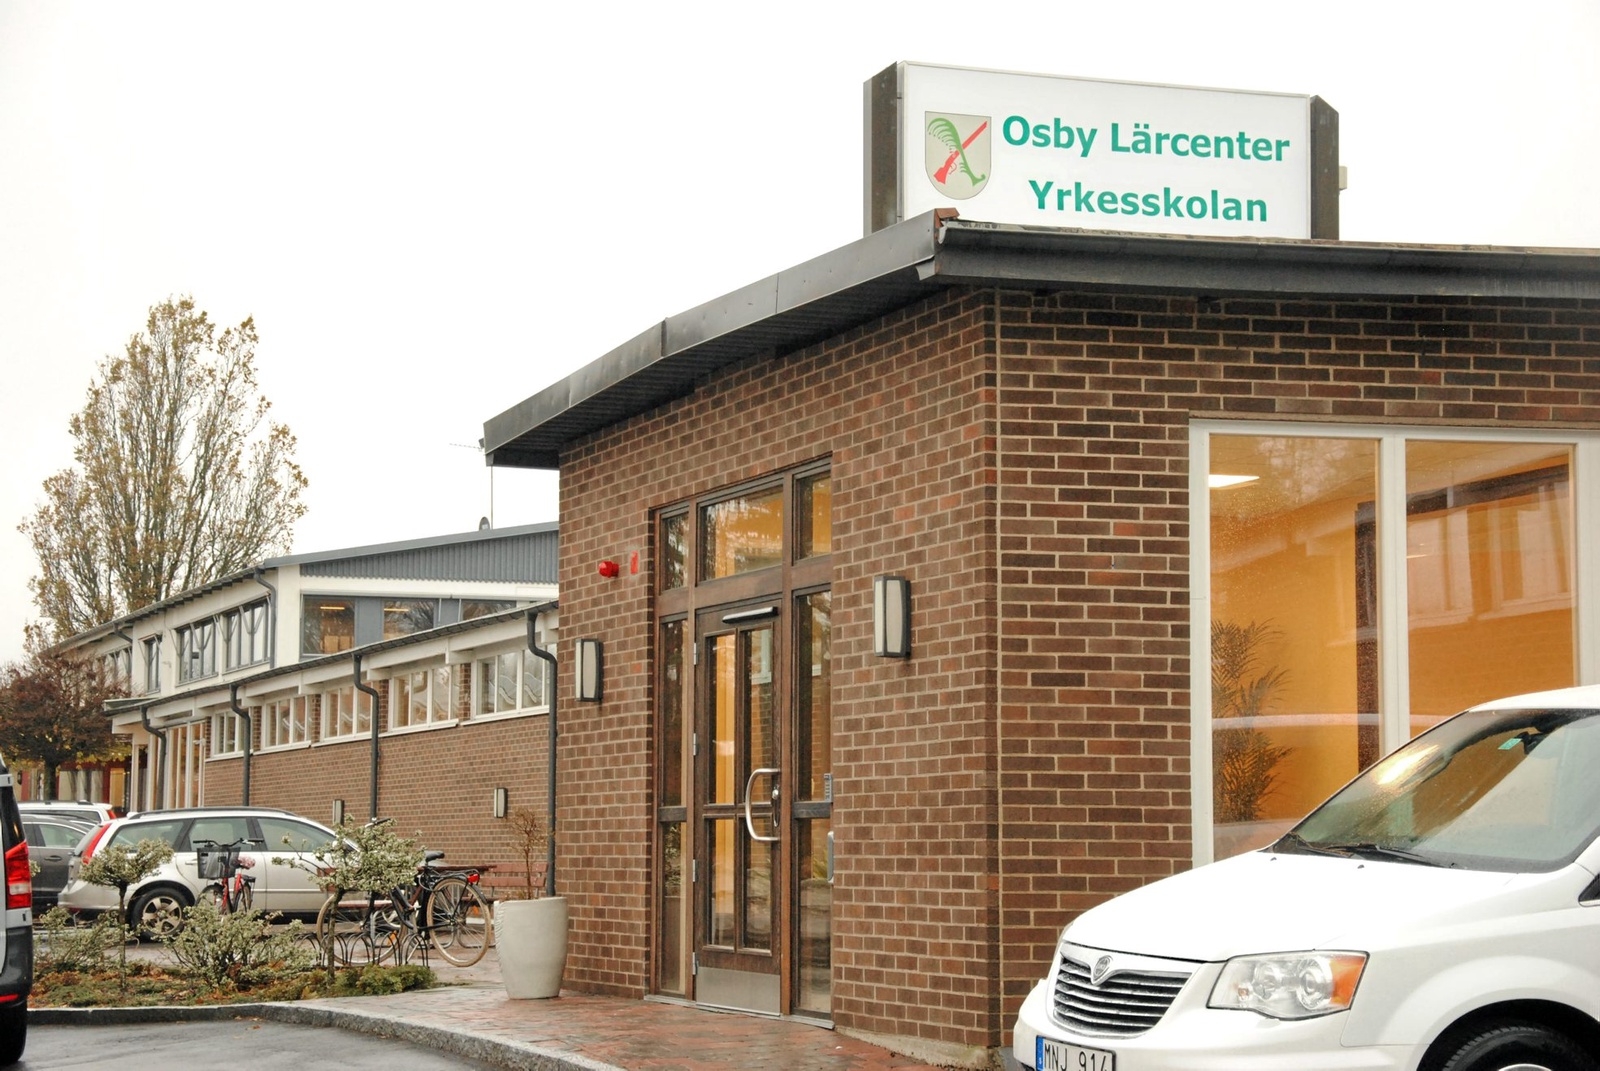 Idag invigs Yrkesskolan och Osby lärcenter.